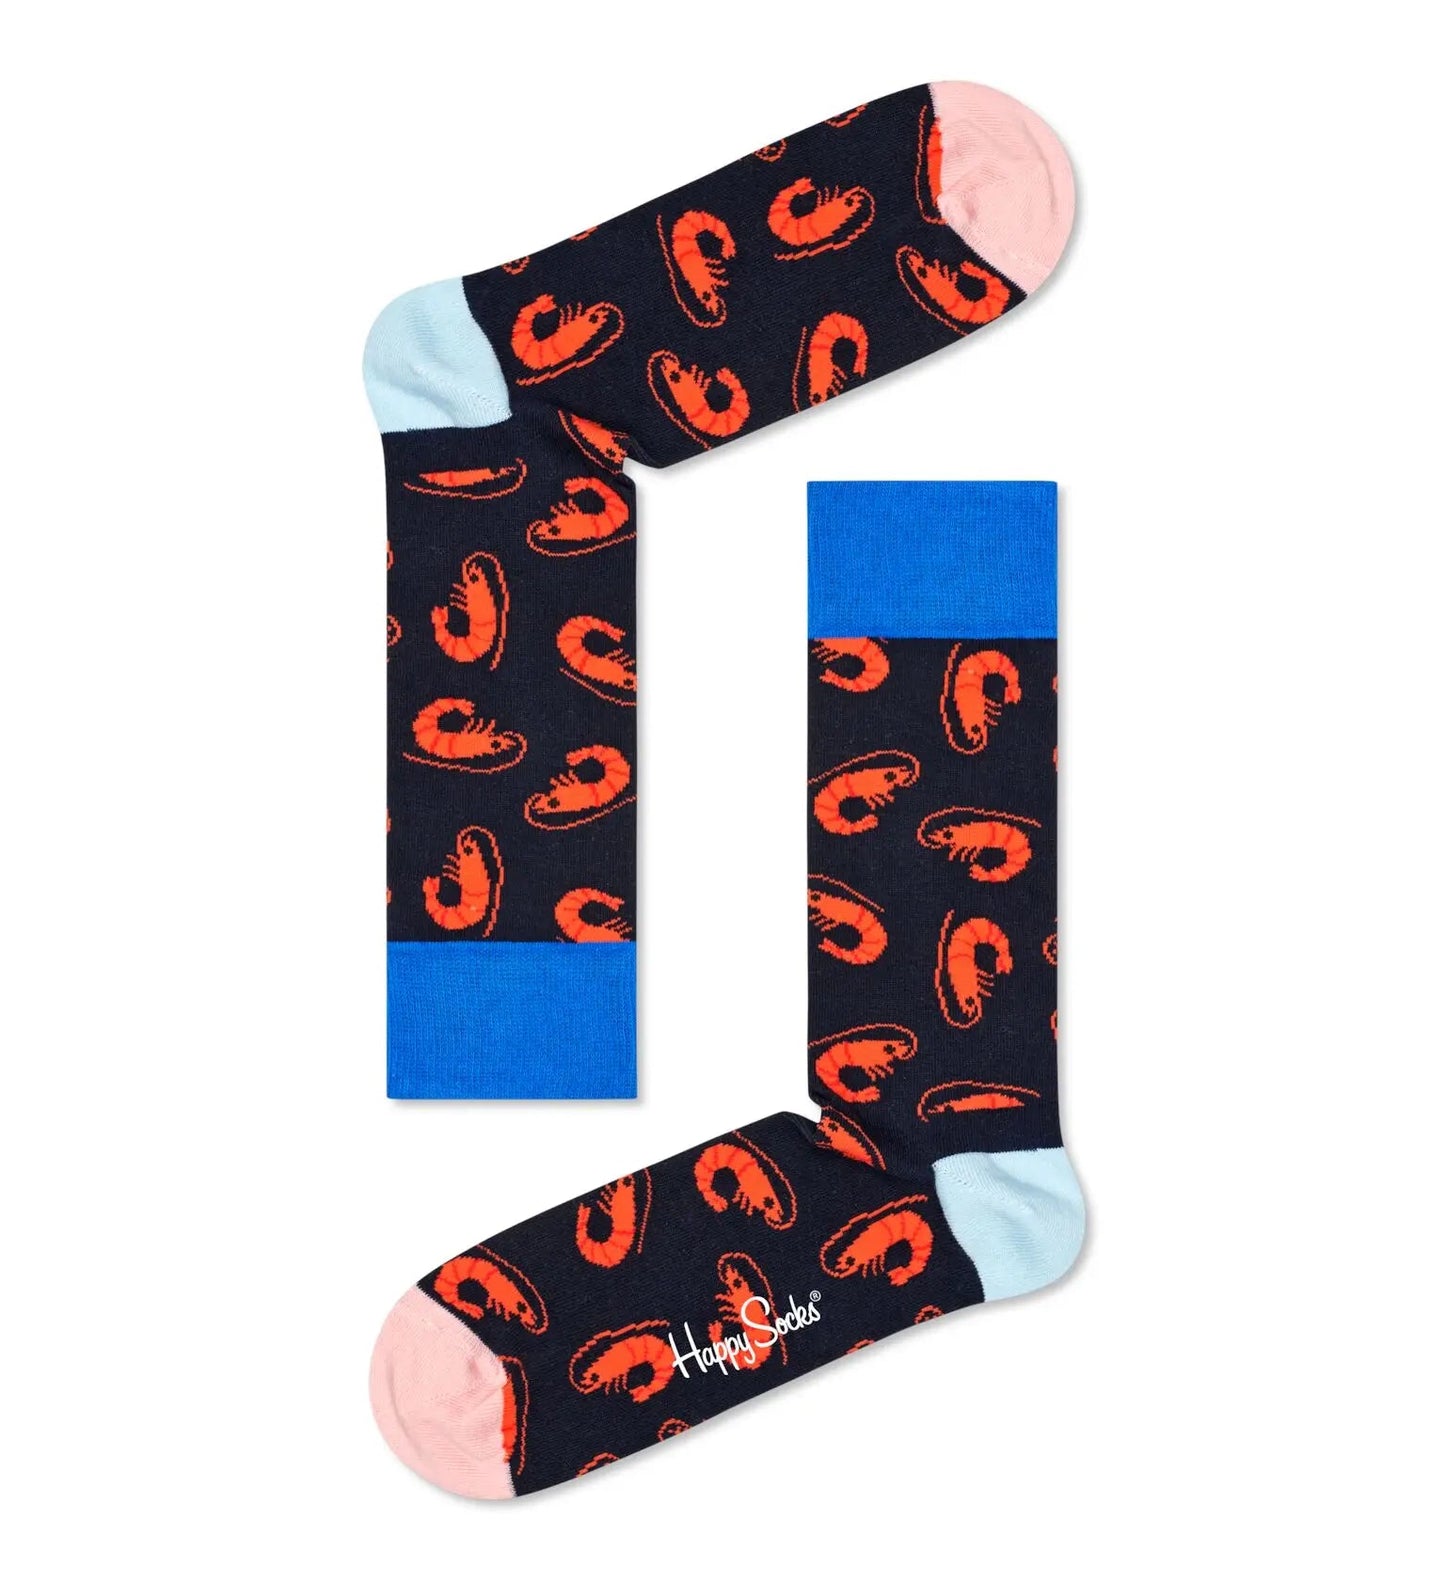 Happy Socks Shrimpy Sock - No Generation